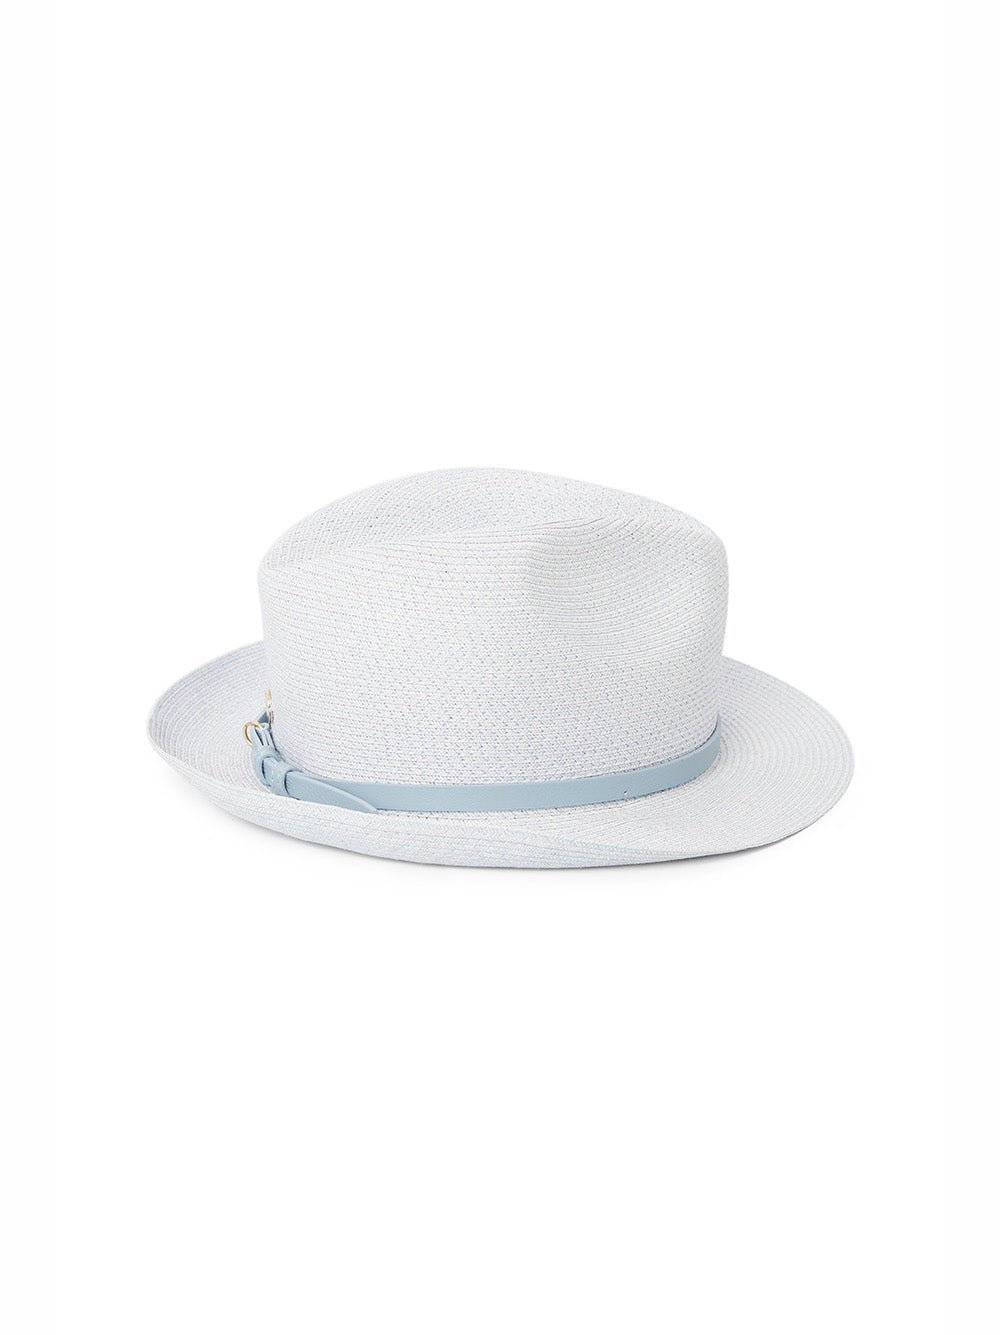 Catarzi - Soft accessories - Hats